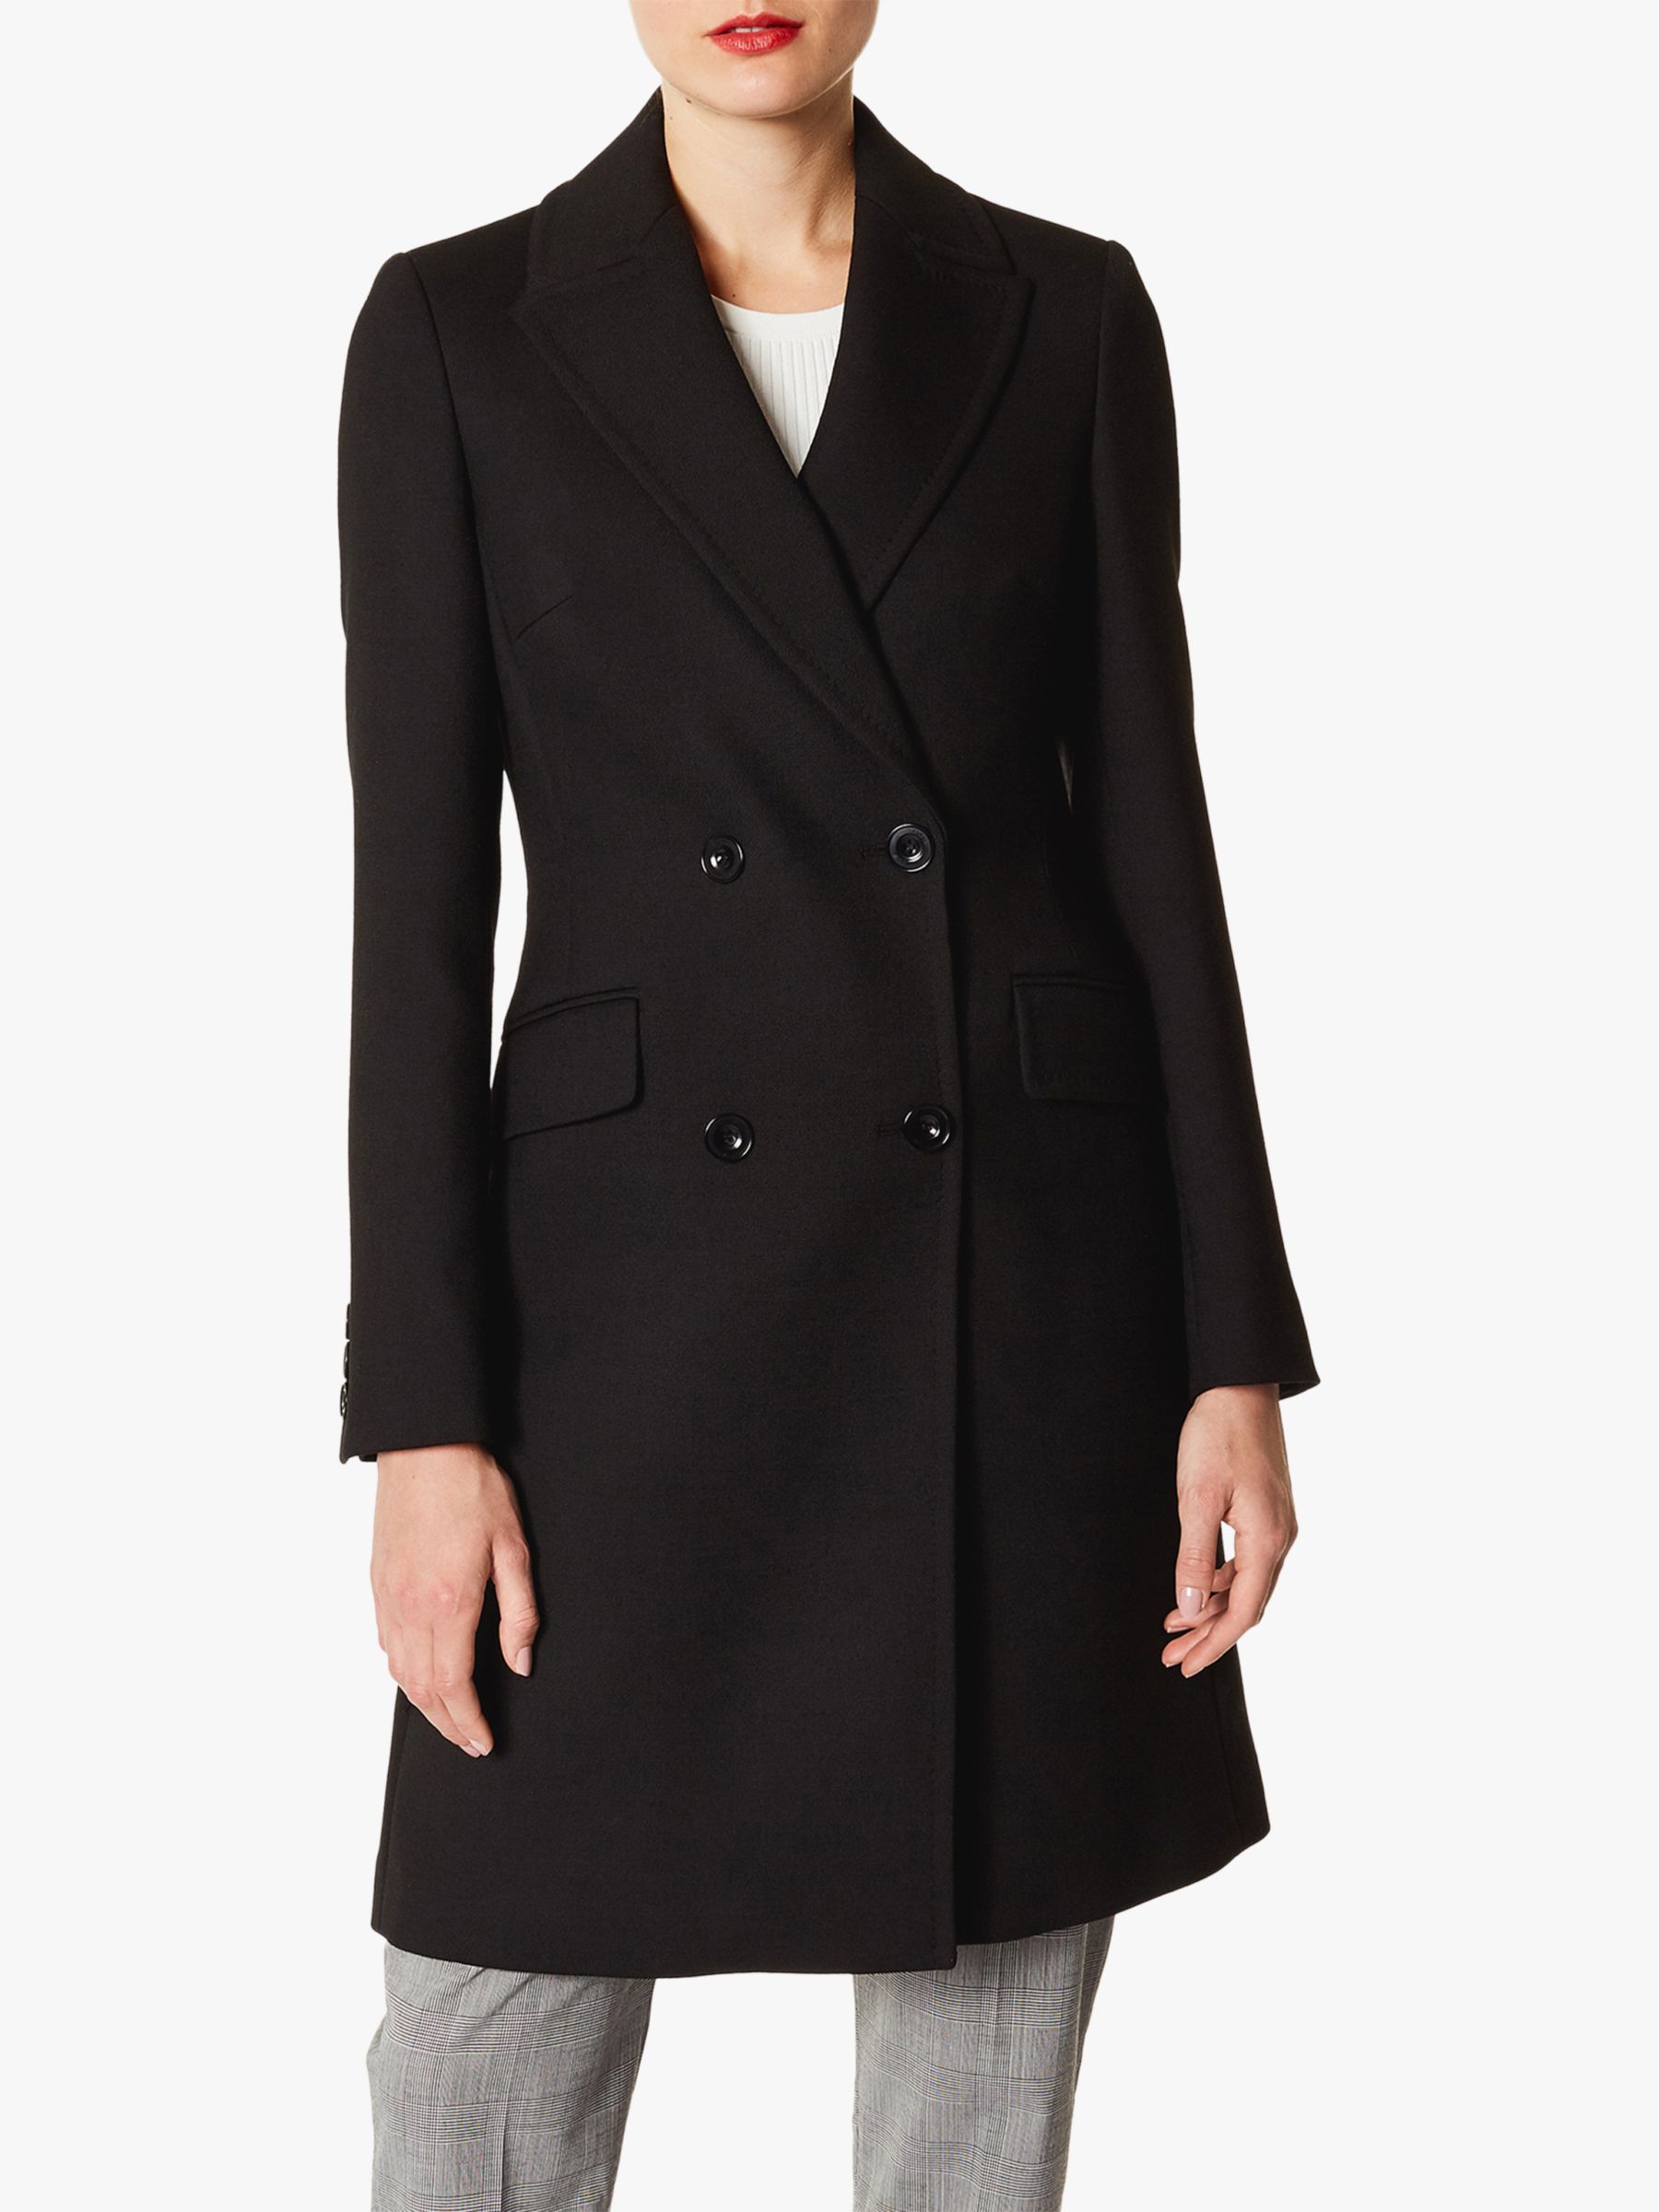 Karen Millen Double Breasted Coat, Black at John Lewis & Partners